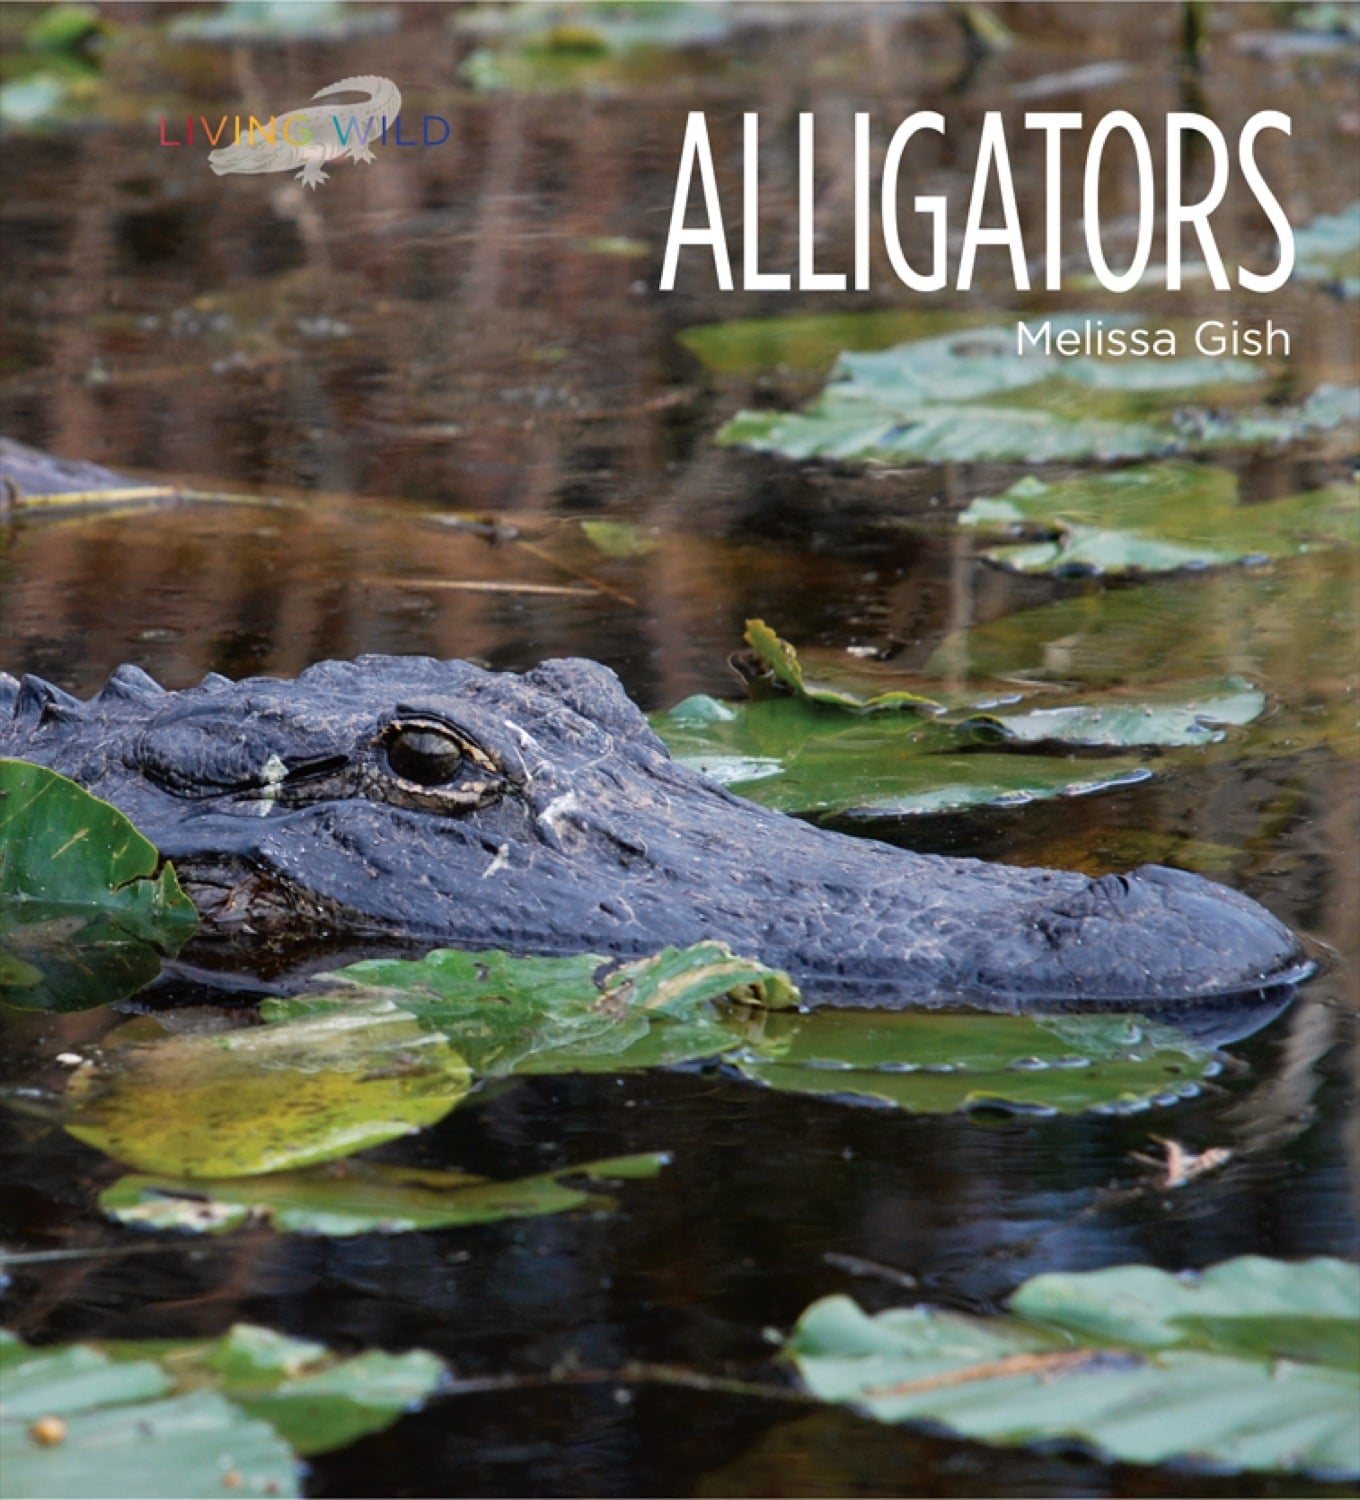 Living Wild - Classic Edition: Alligators